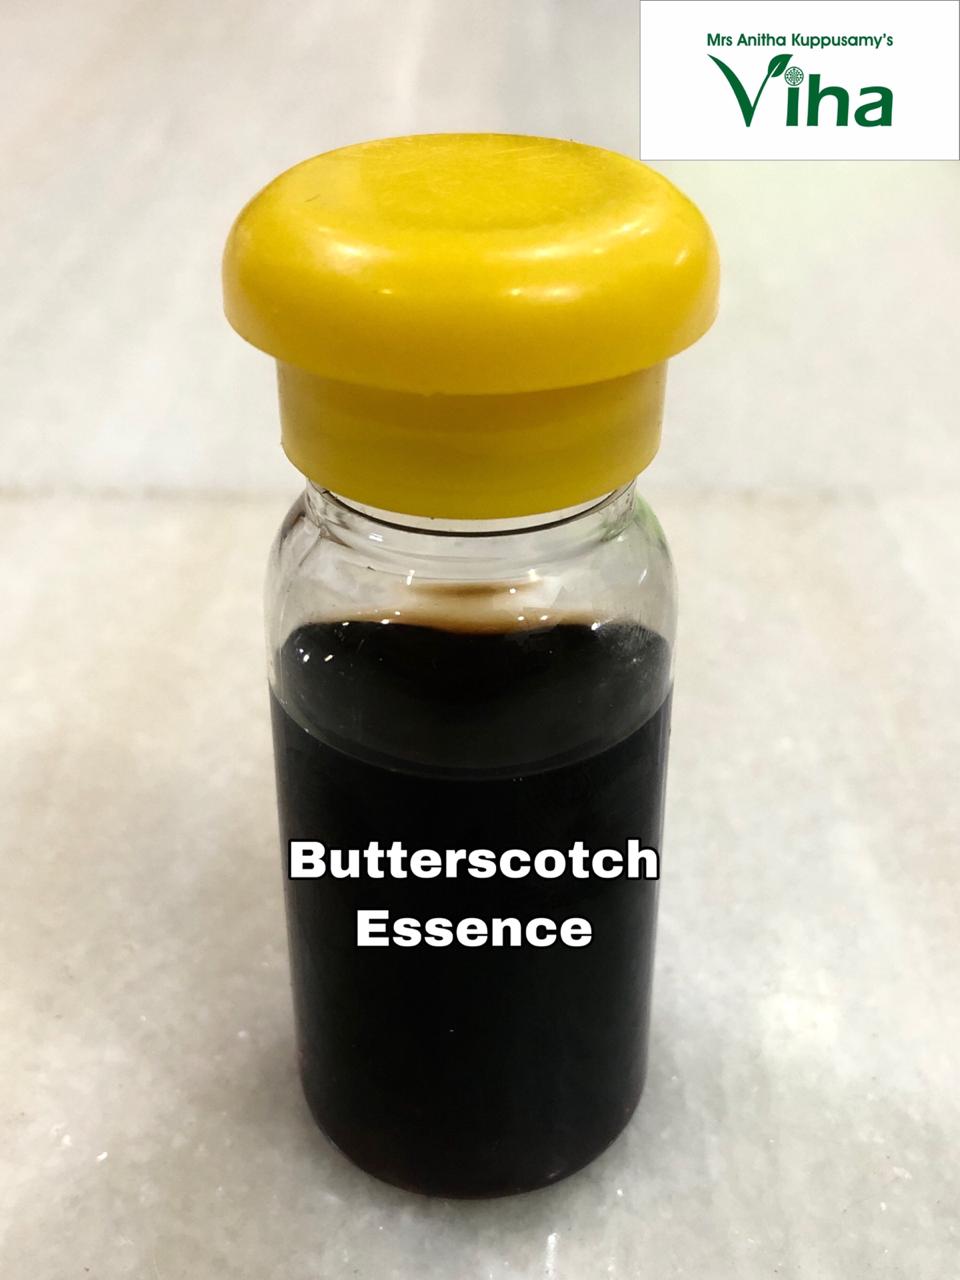 Butterscotch Essence